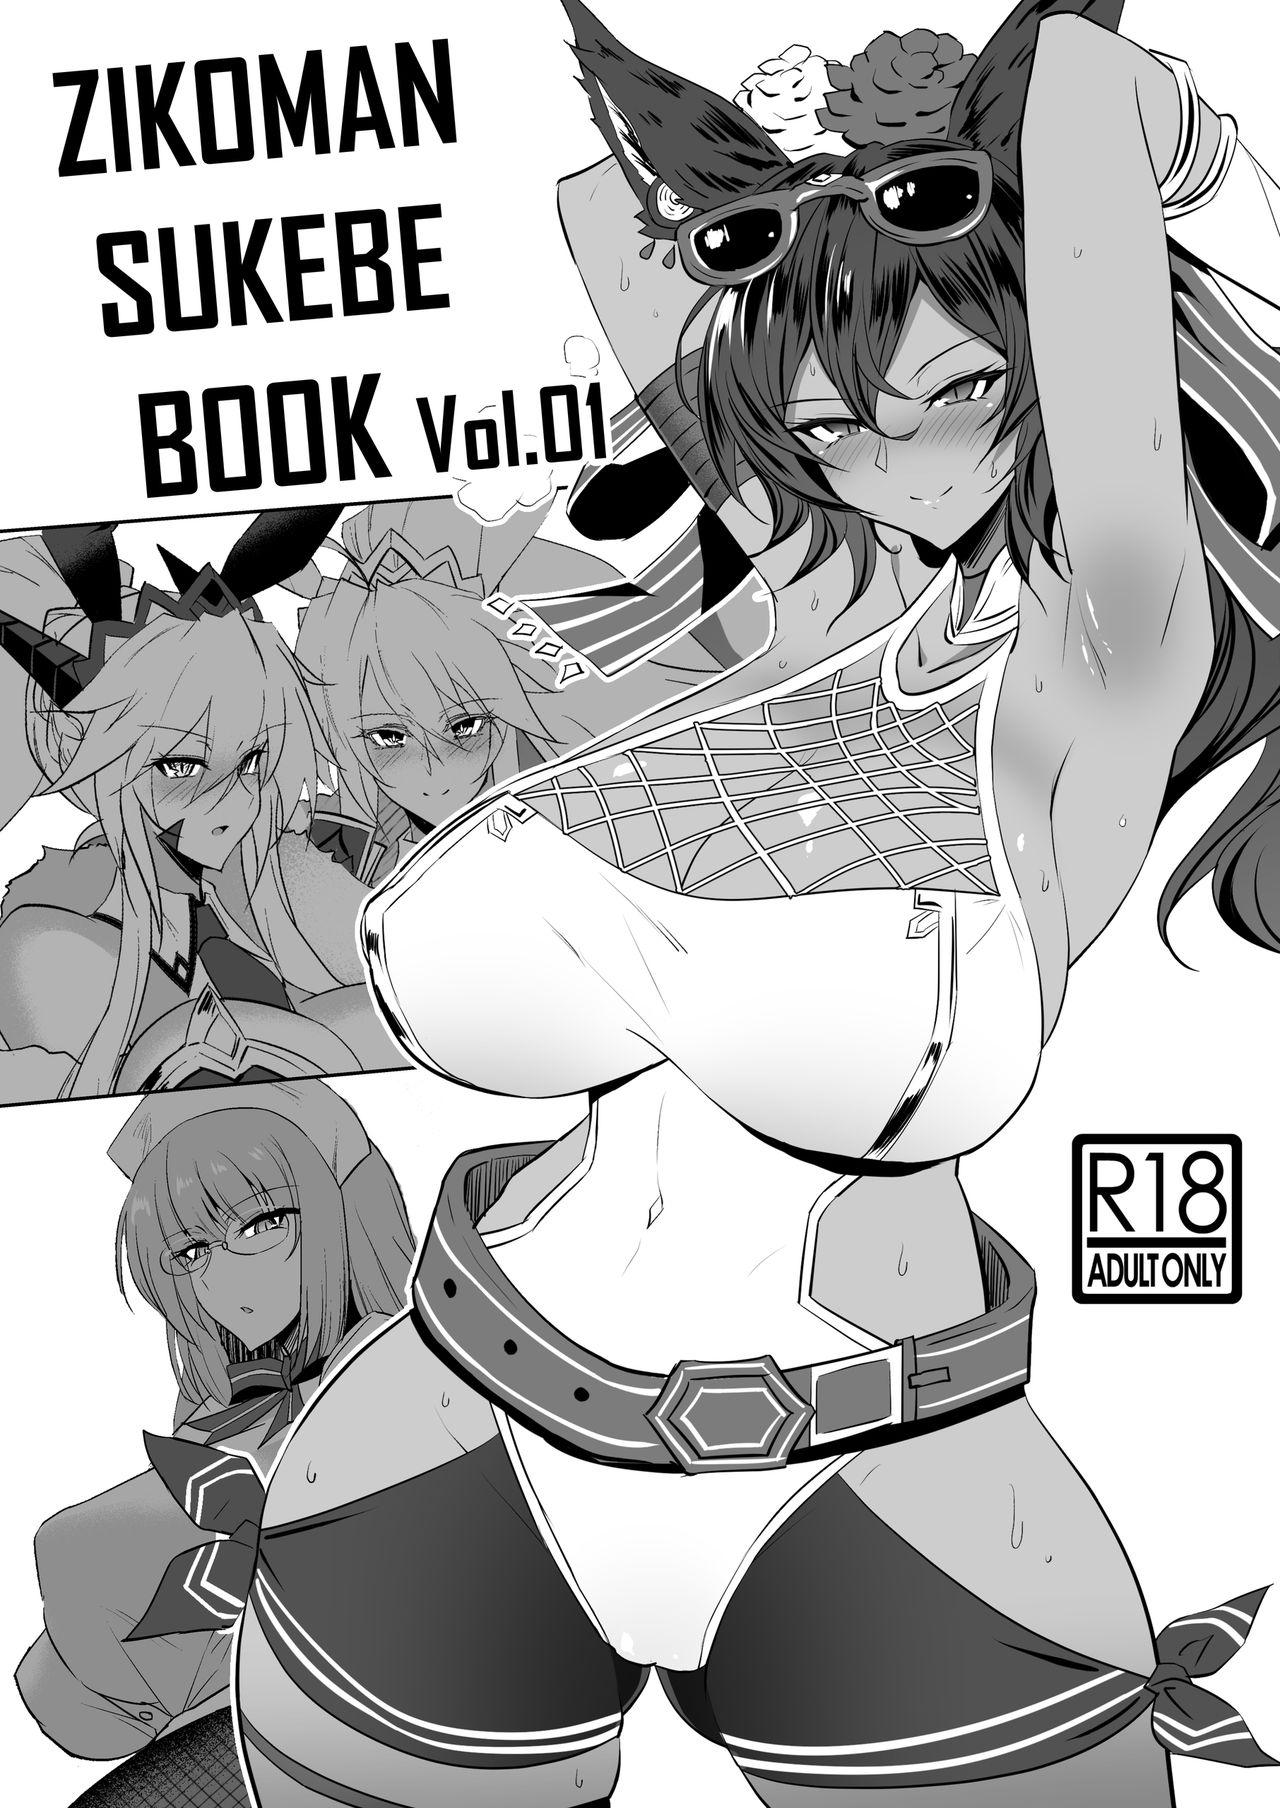 Underwear ZIKOMAN SUKEBE BOOK Vol.01 - Fate grand order Granblue fantasy Sex Tape - Picture 1